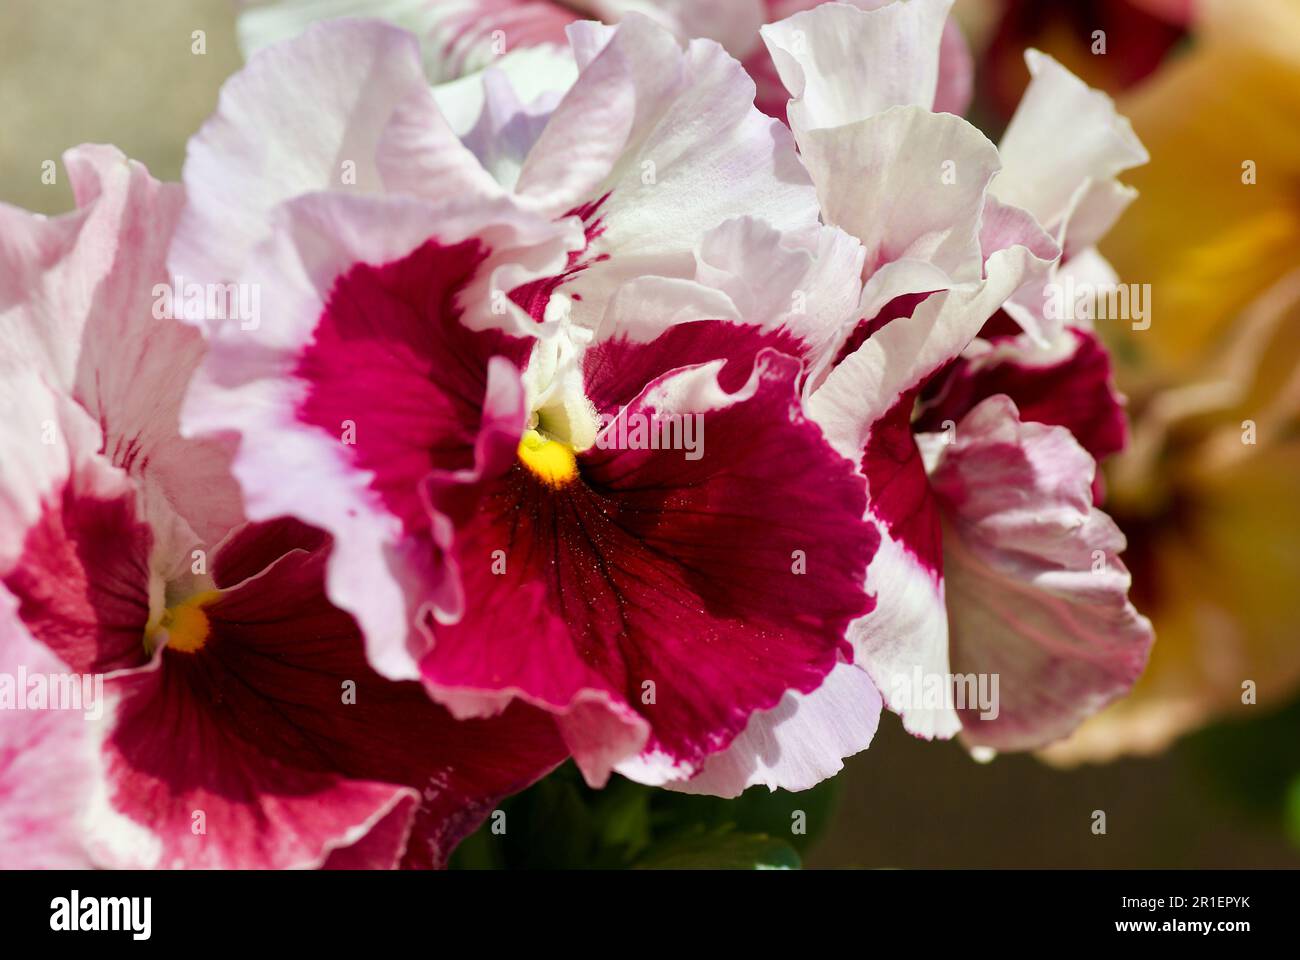 Gros plan de fleurs de pansy roses et violettes dans un lit de fleurs au printemps. Banque D'Images